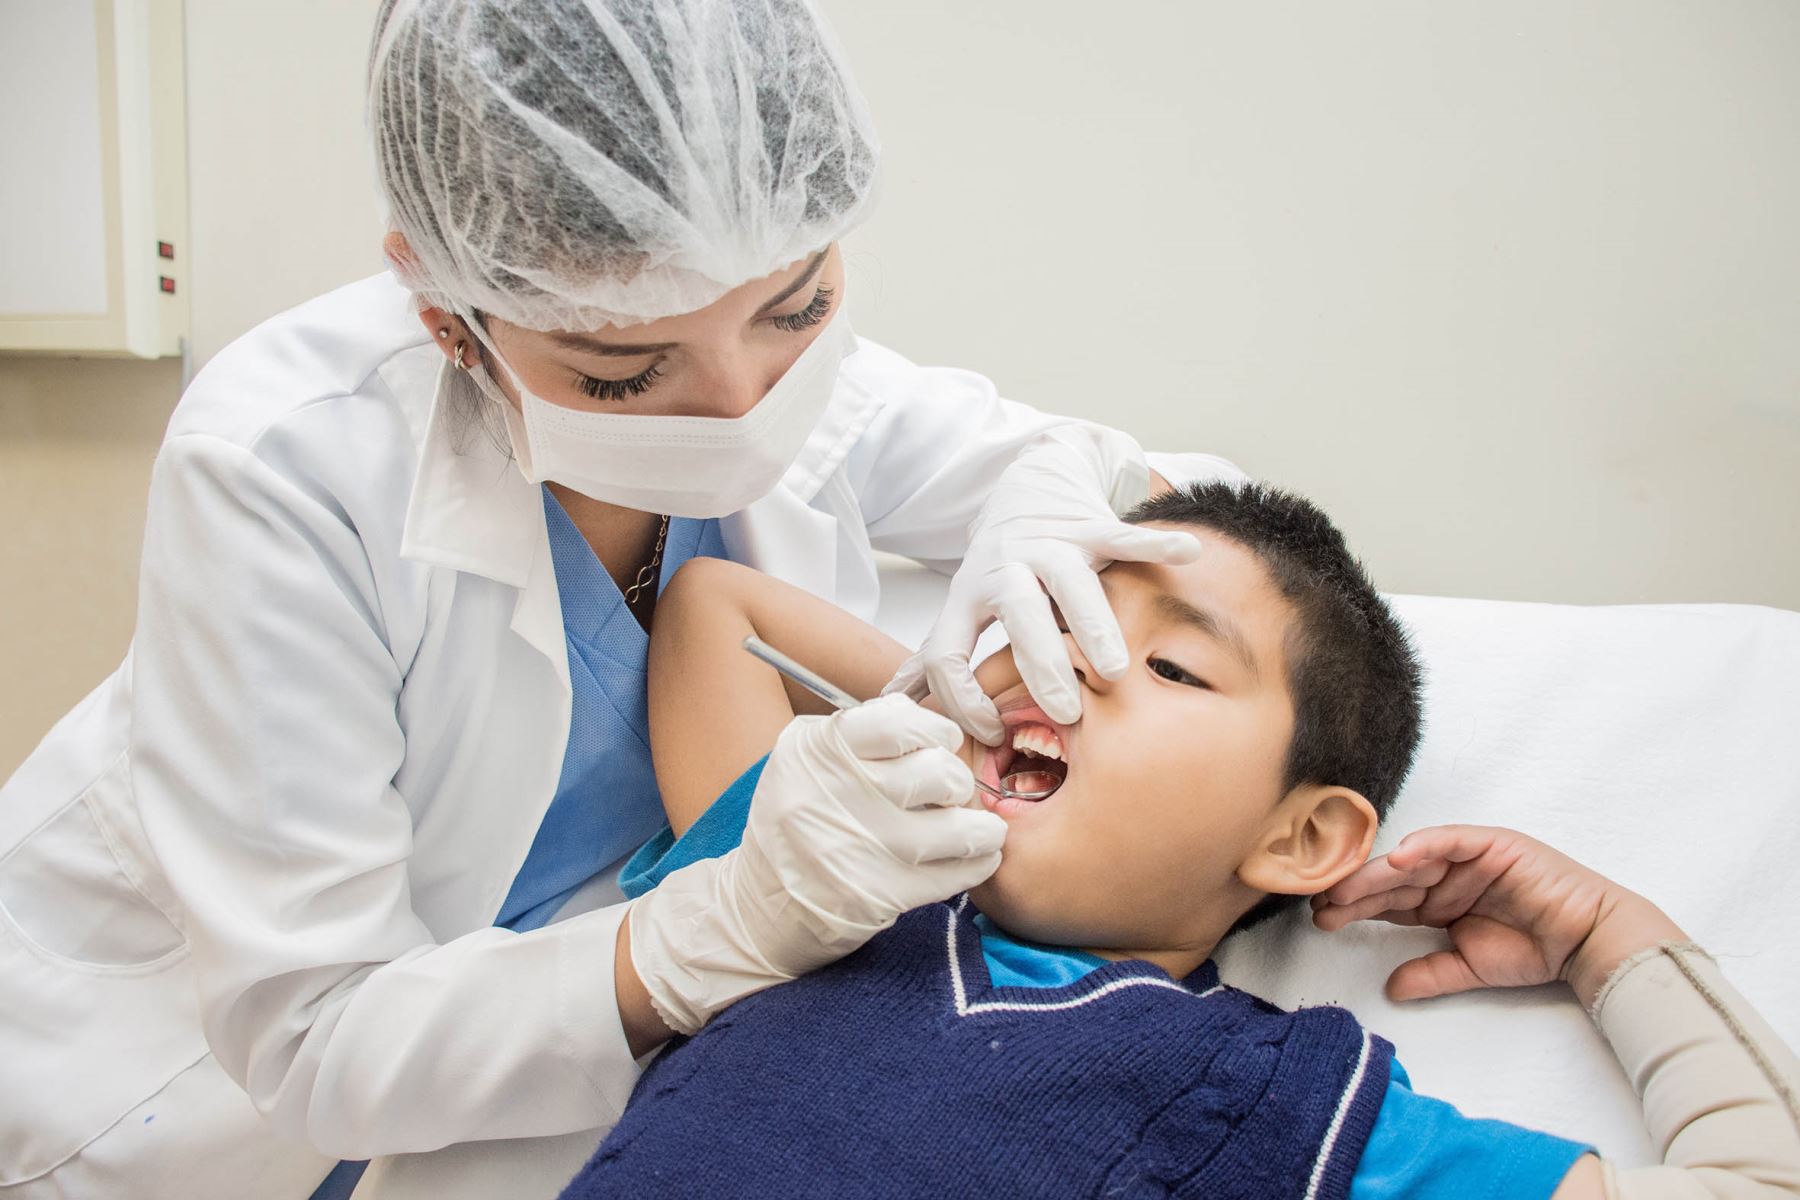 Niños con malos hábitos bucales alteran la formación de sus dientes, paladar y mandíbula. Foto: Cortesía